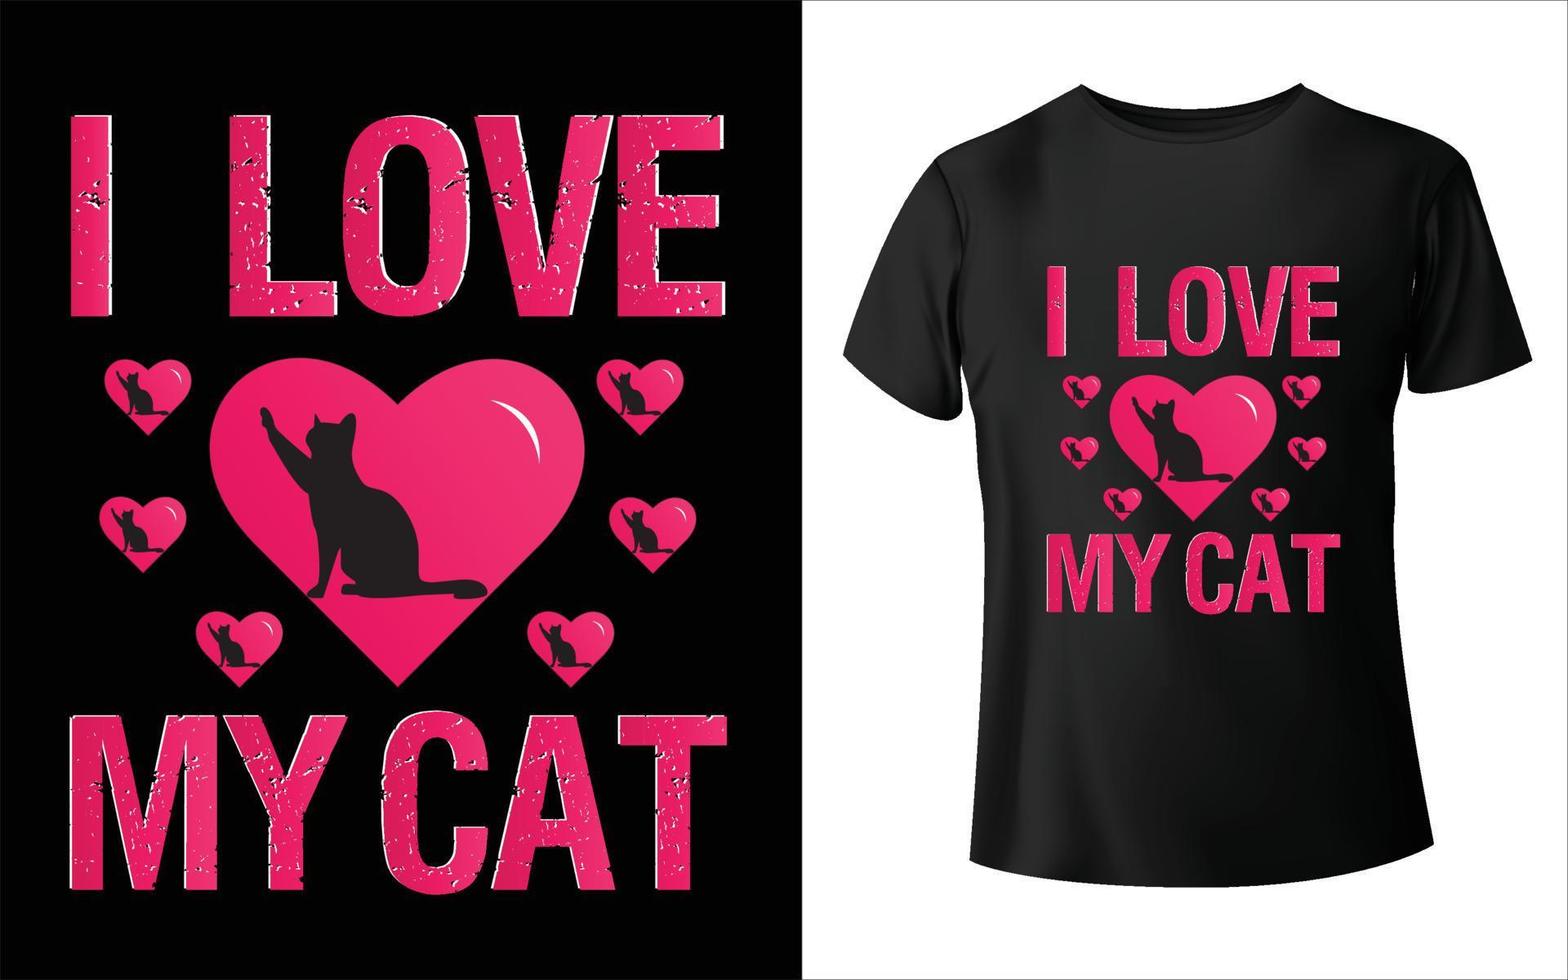 vector de gato camiseta de gato paleta de colores de verano de gato diseño de camiseta camiseta de gato